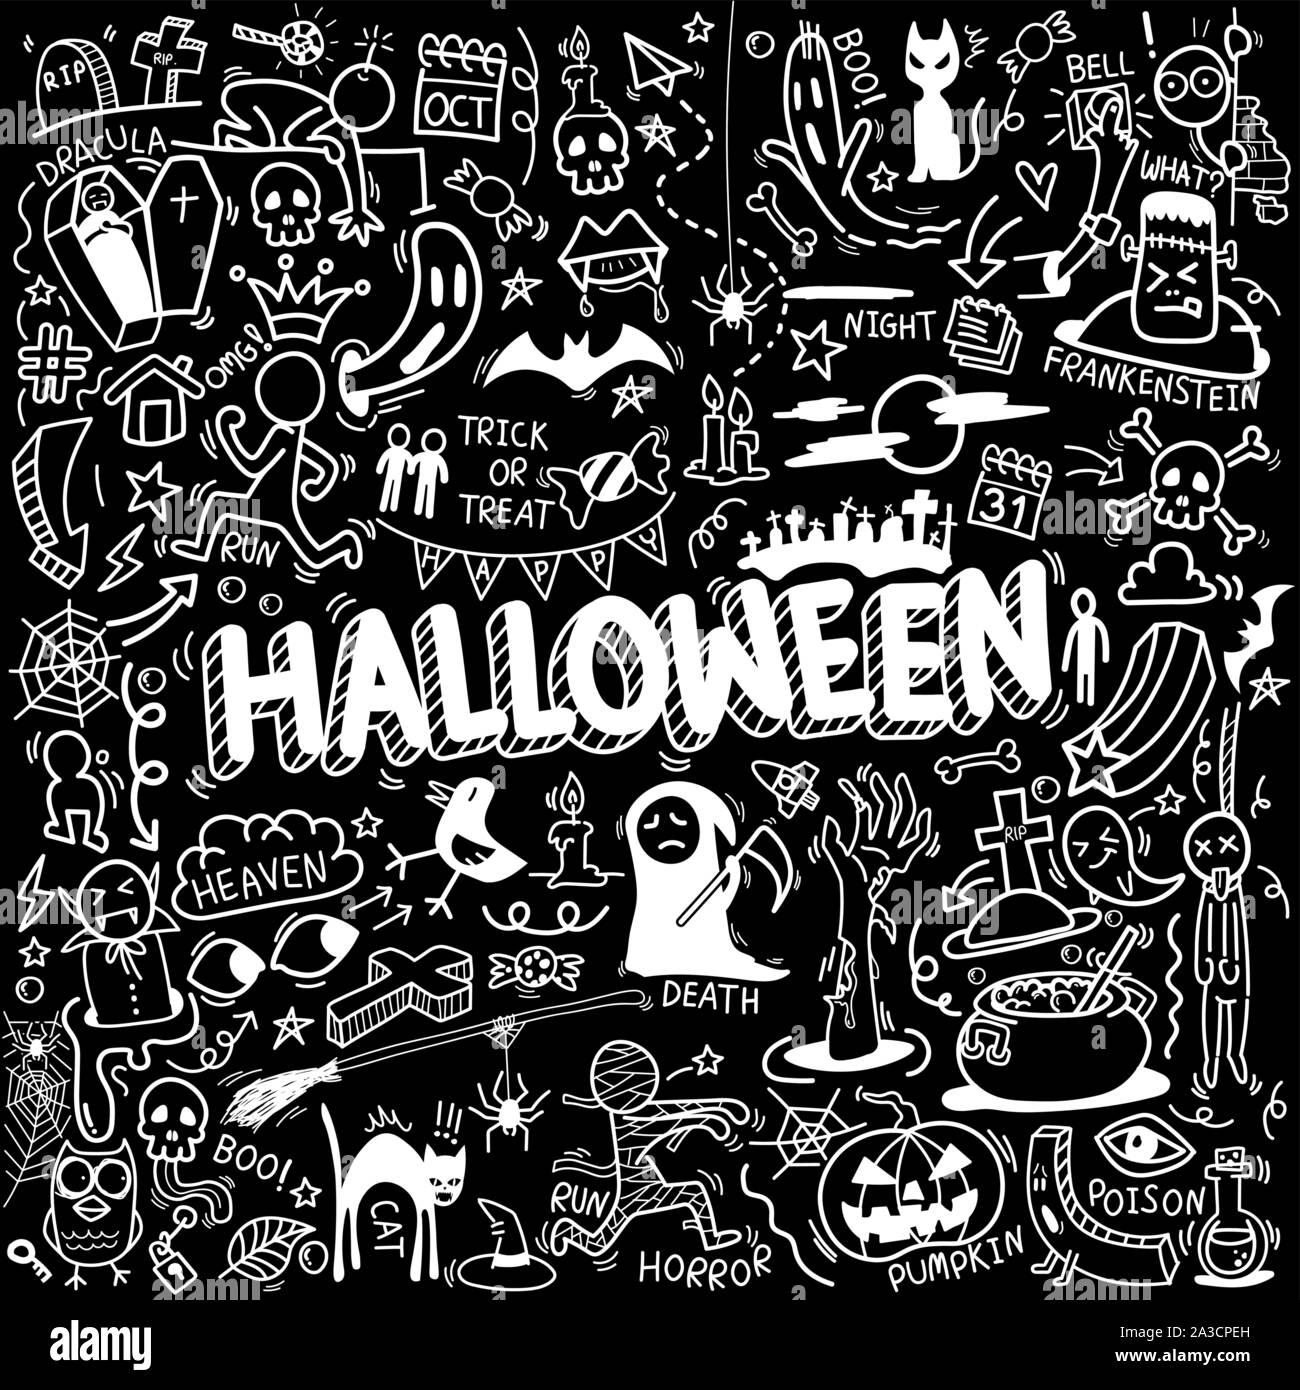 Vecteur de hand drawn doodle cartoon ensemble d'objets et de symboles sur le thème de l'Halloween Illustration de Vecteur